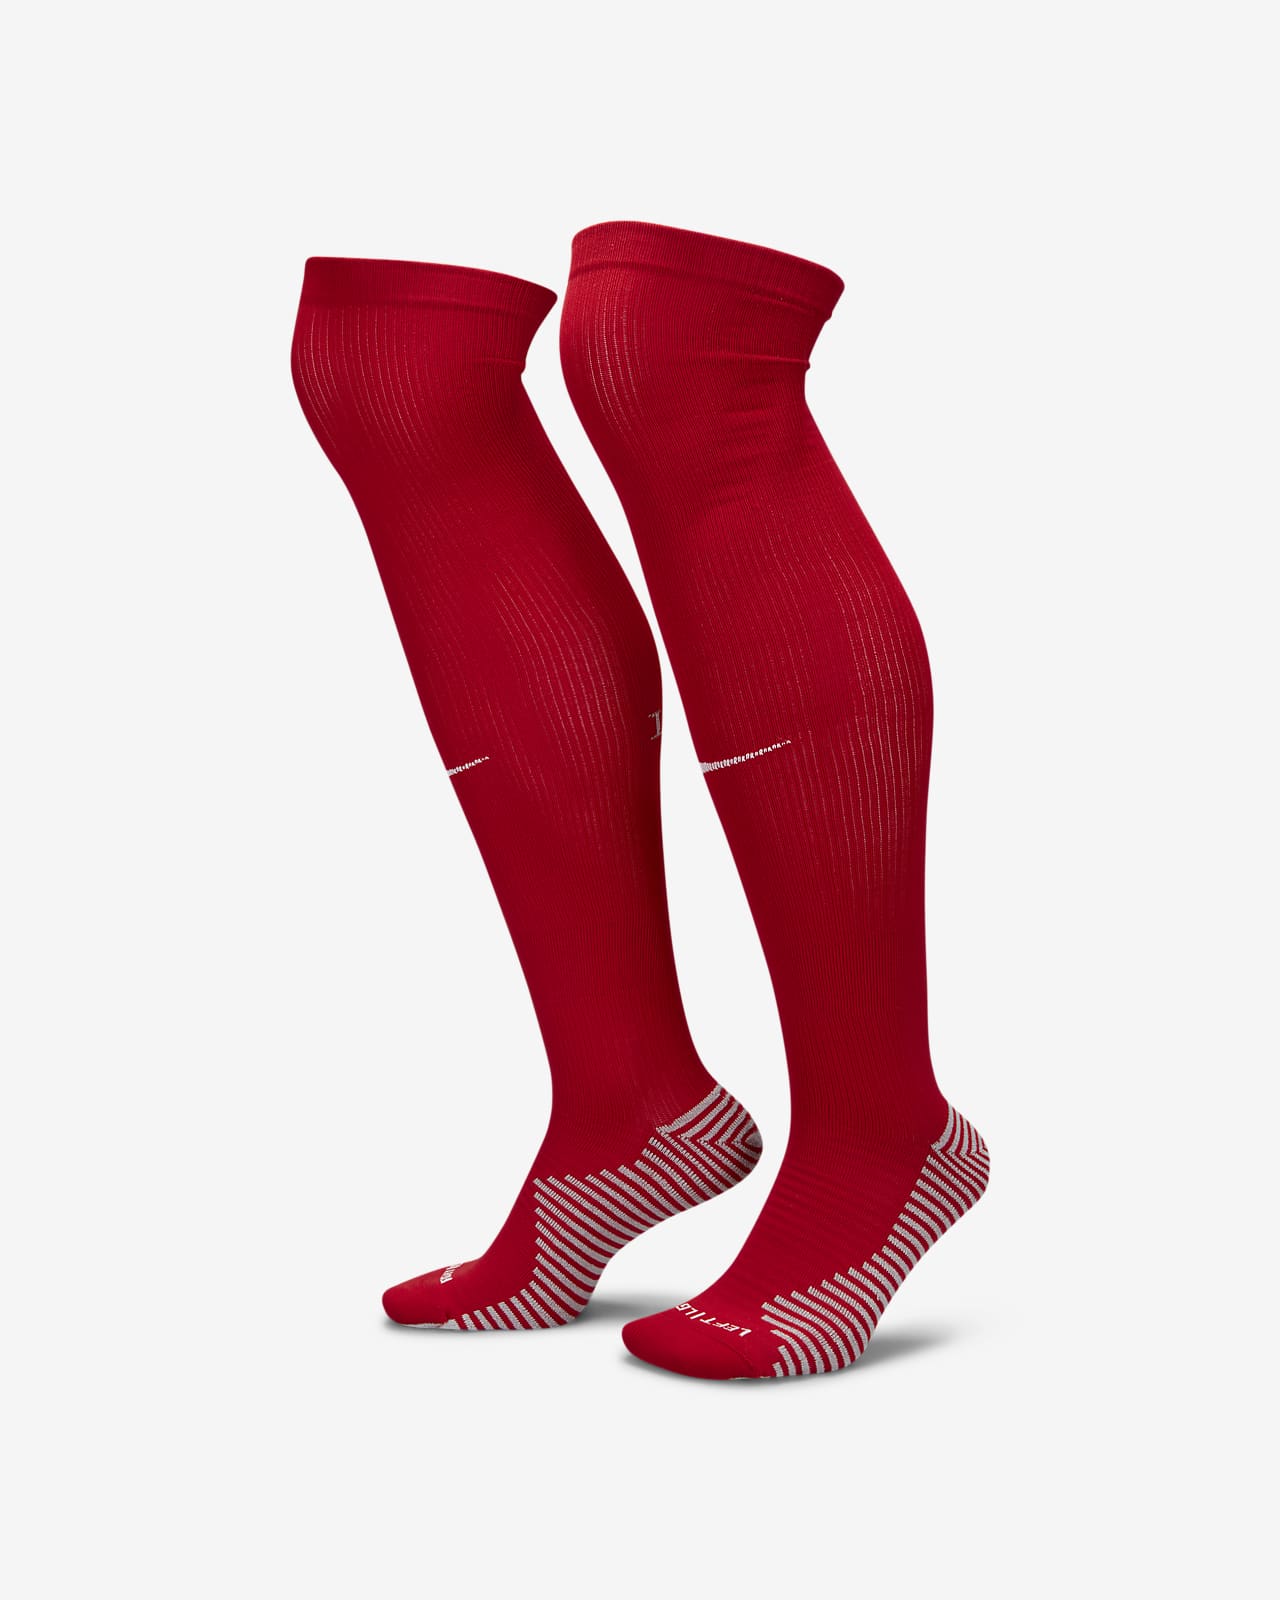 Ποδοσφαιρικές κάλτσες μέχρι το γόνατο εντός έδρας Λίβερπουλ Strike